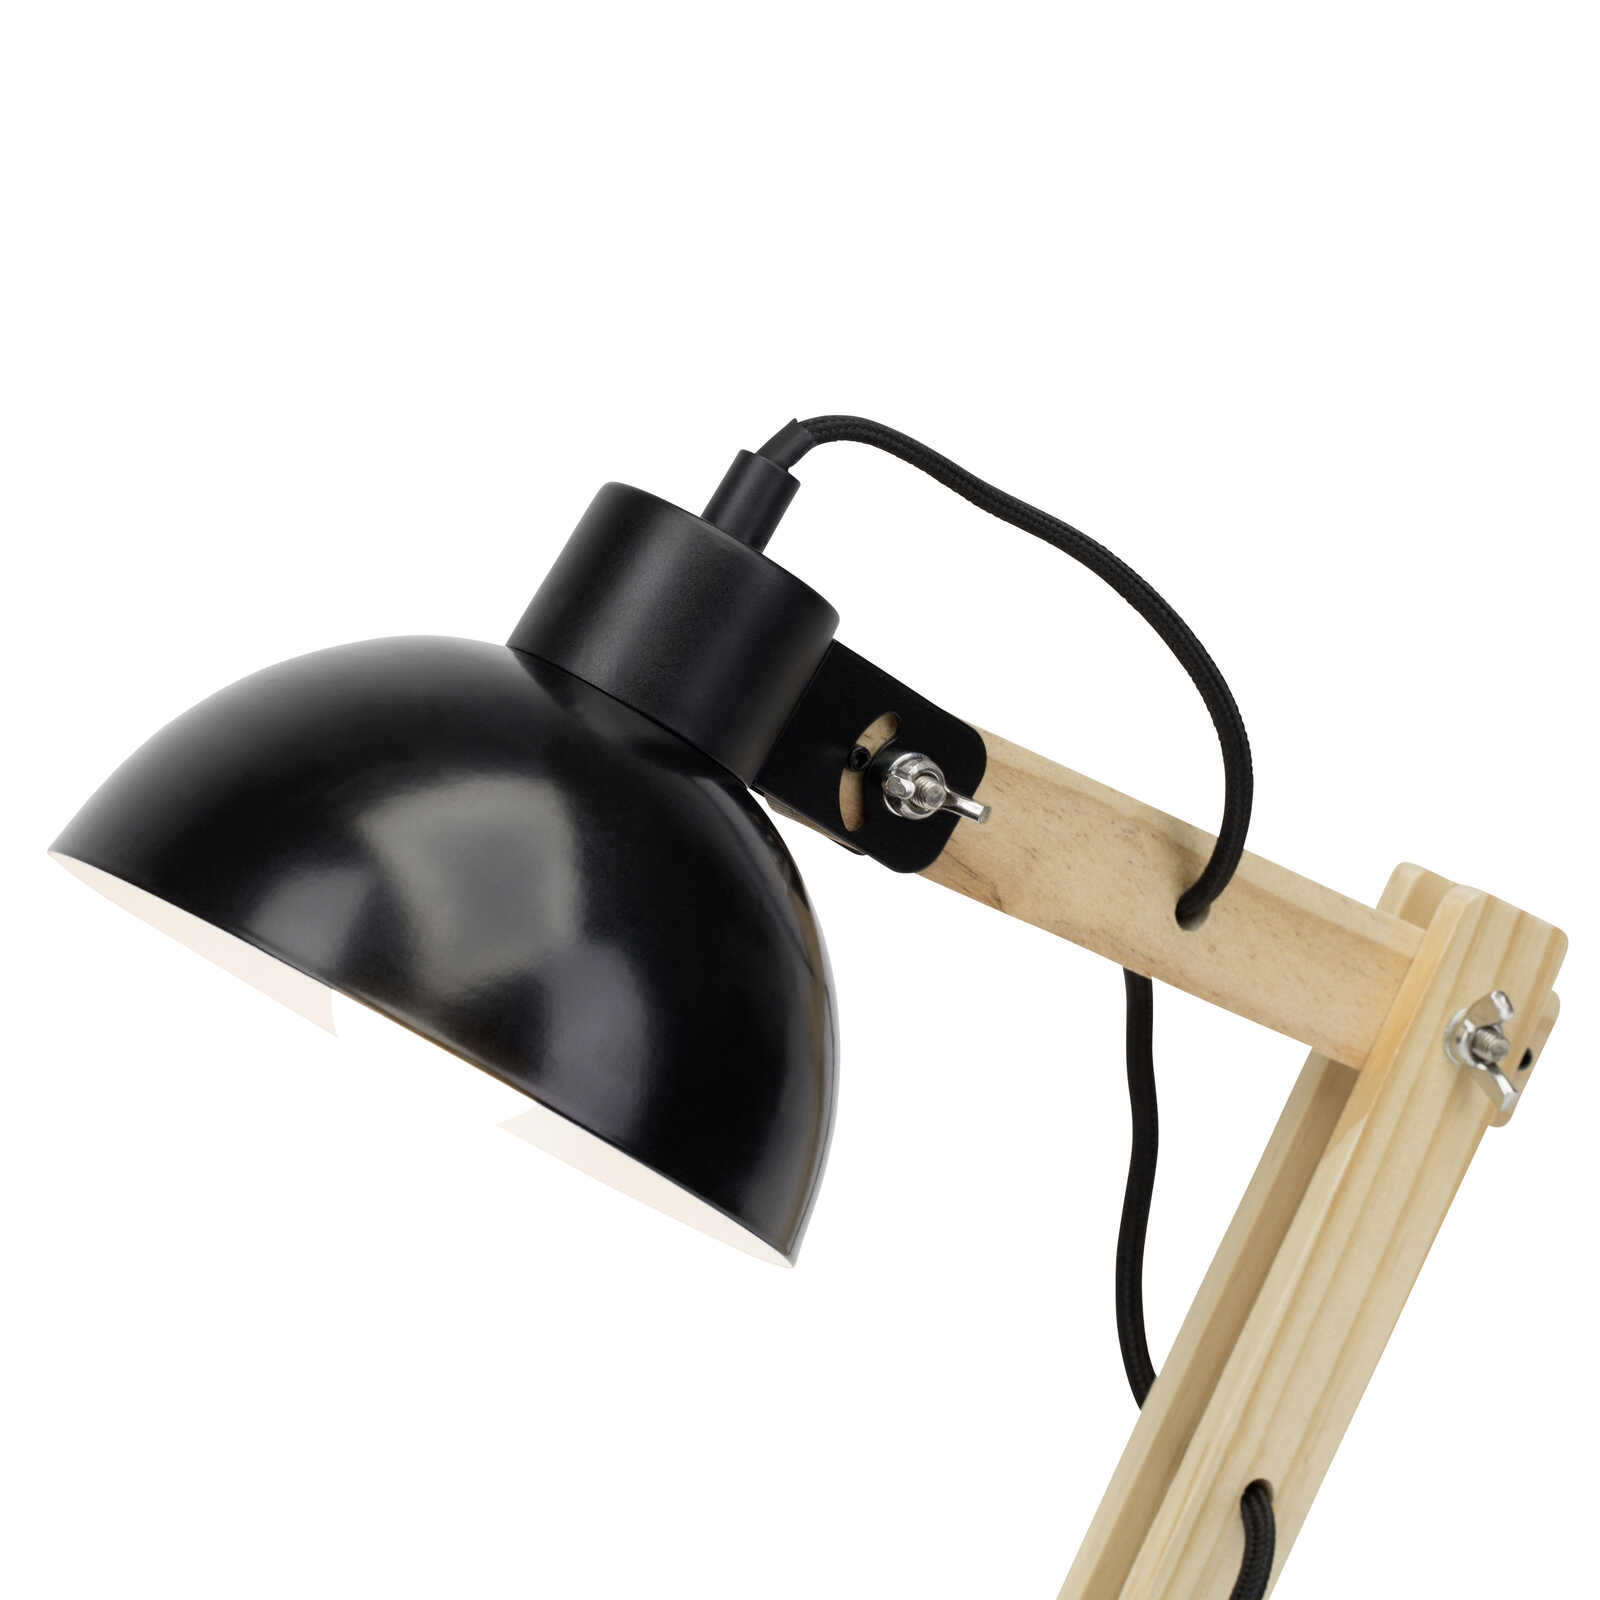             Houten tafellamp - Lisa 2 - Zwart
        